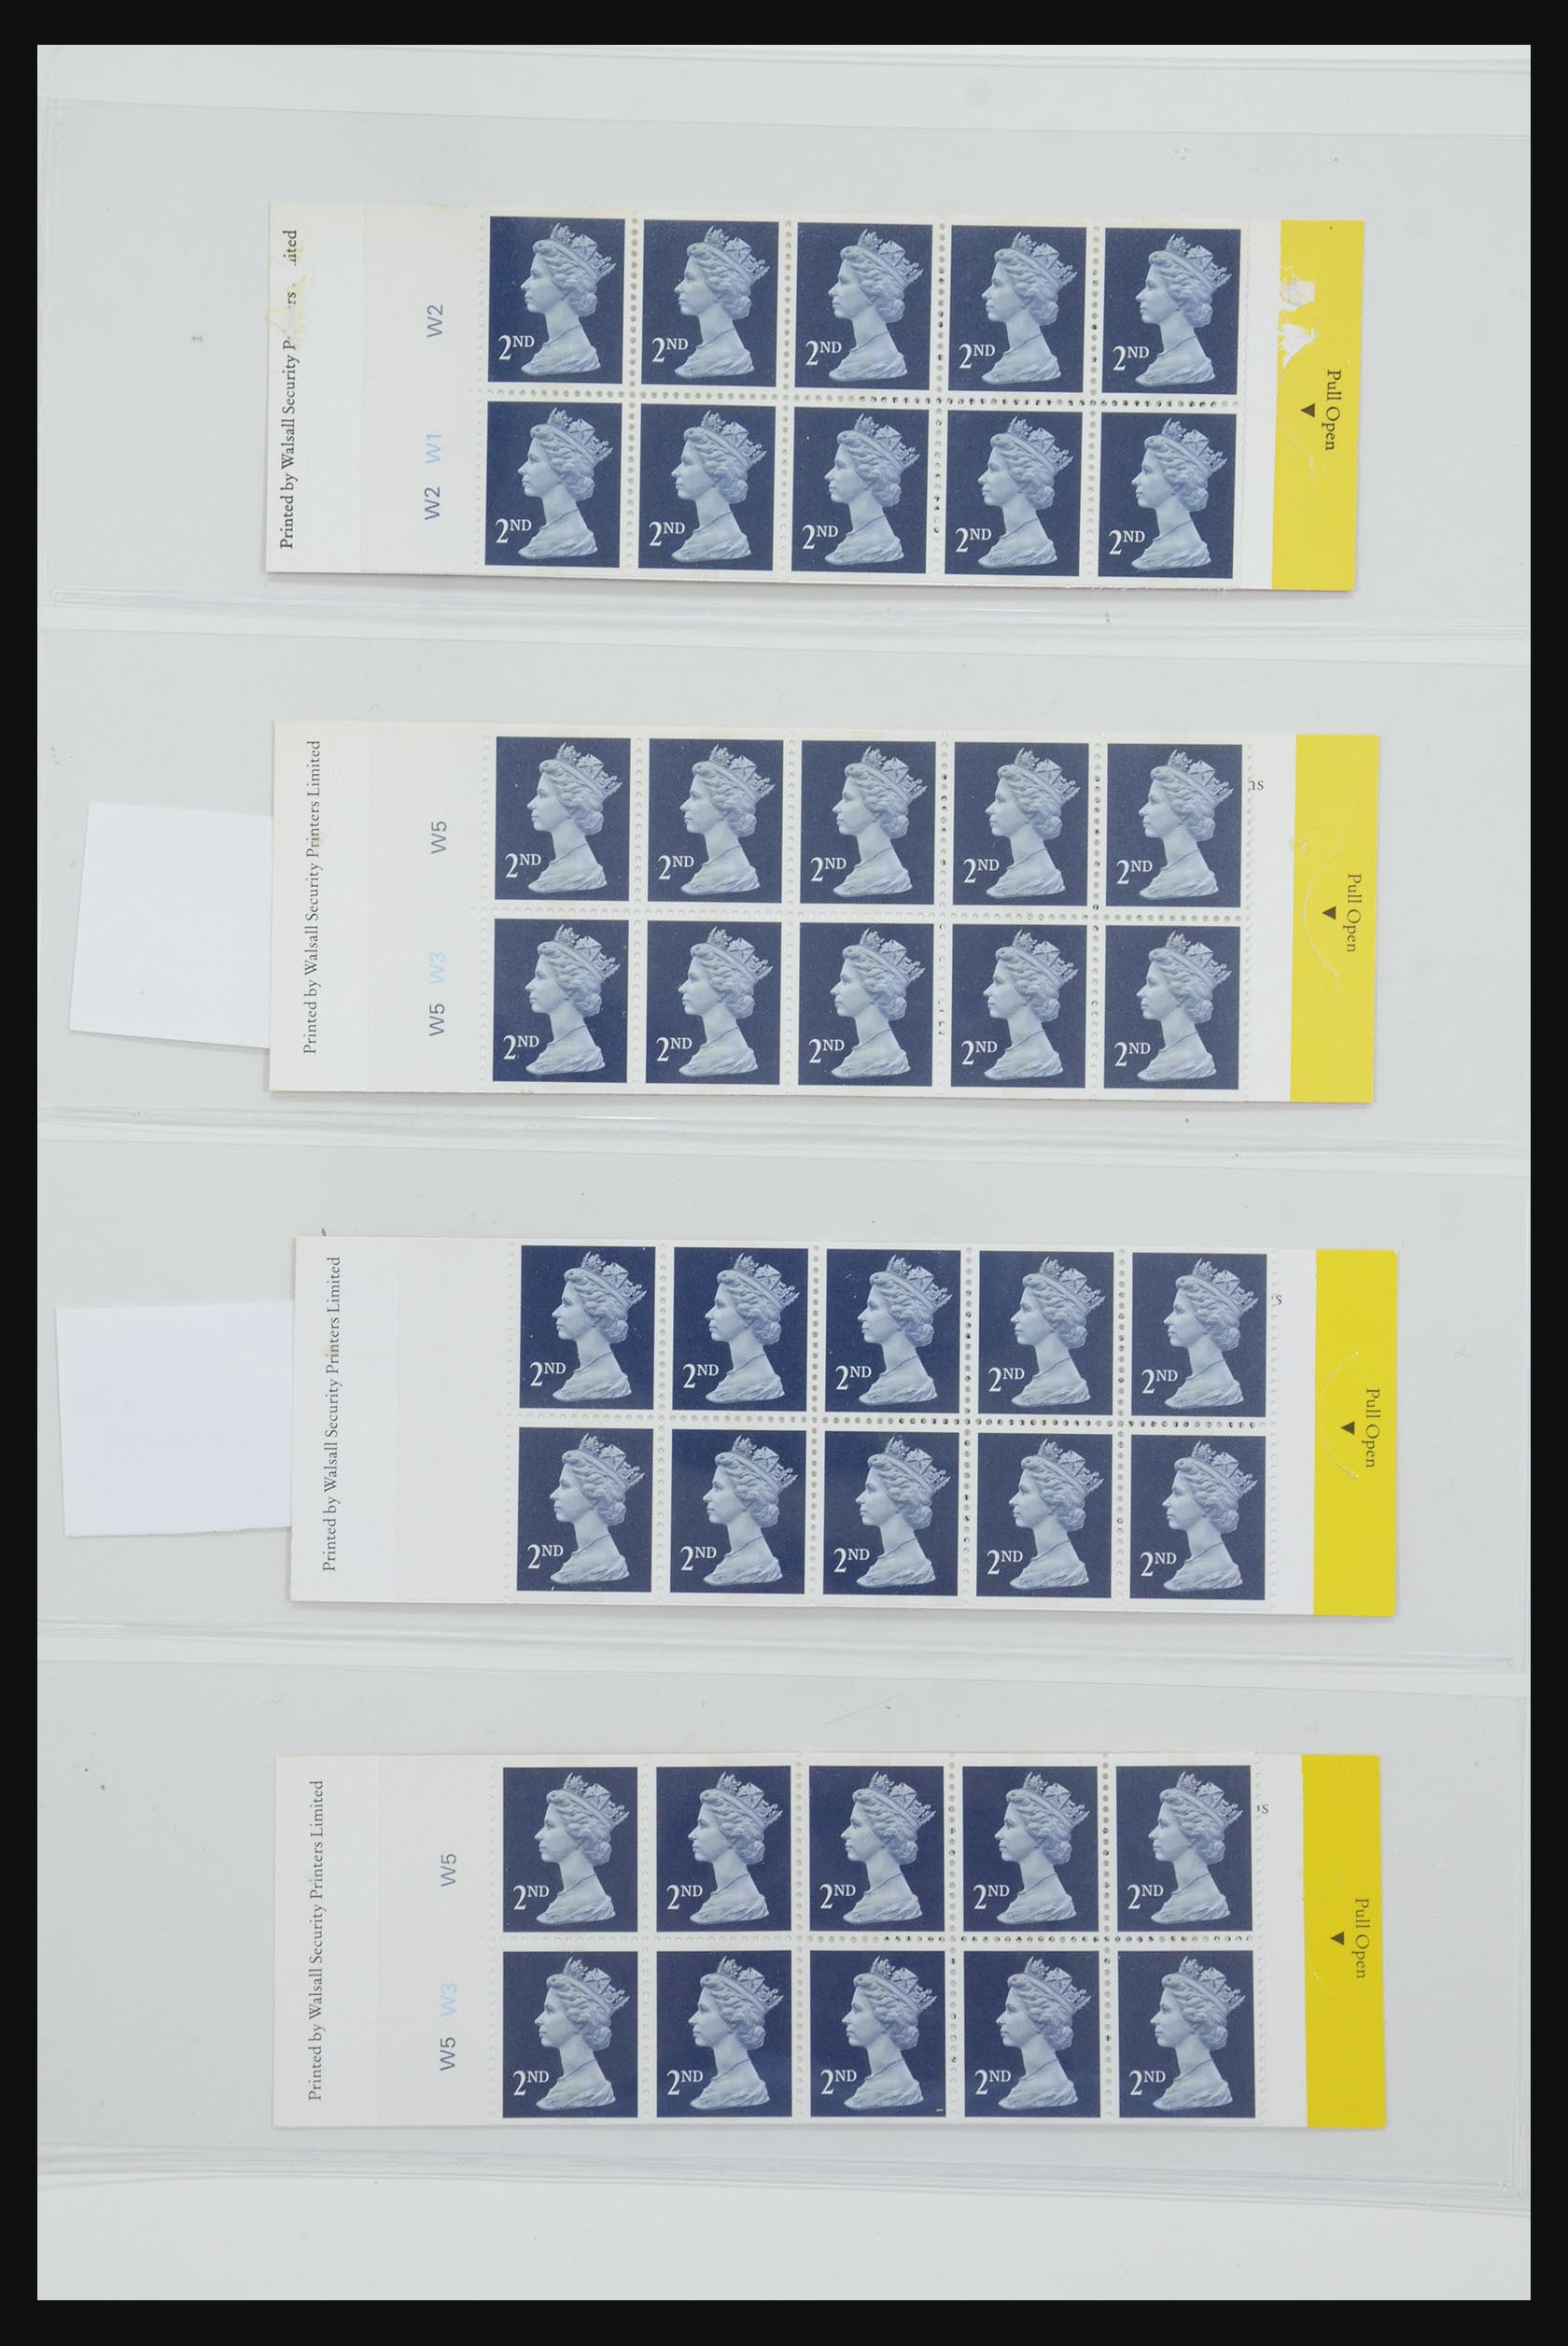 31959 228 - 31959 Engeland postzegelboekjes 1987-2016!!